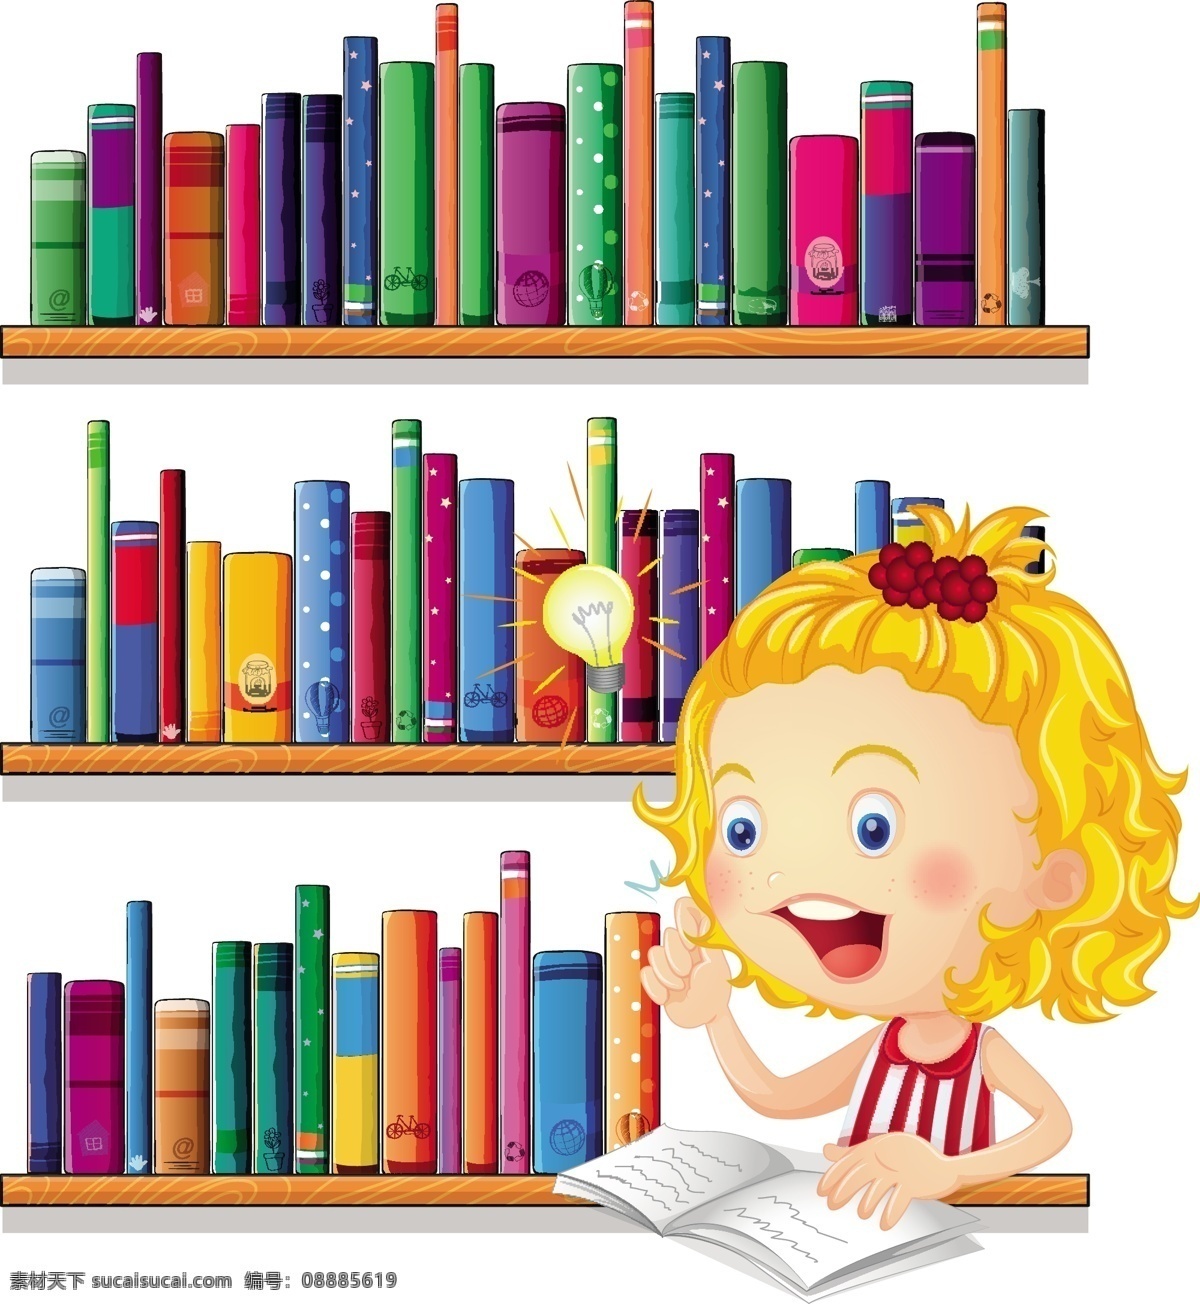 小女孩 学习 看书的小孩 聪明的小女孩 聪明 看书 电灯 书架 书籍 金发女孩 可爱 认真 好素材齐分享 动漫动画 动漫人物